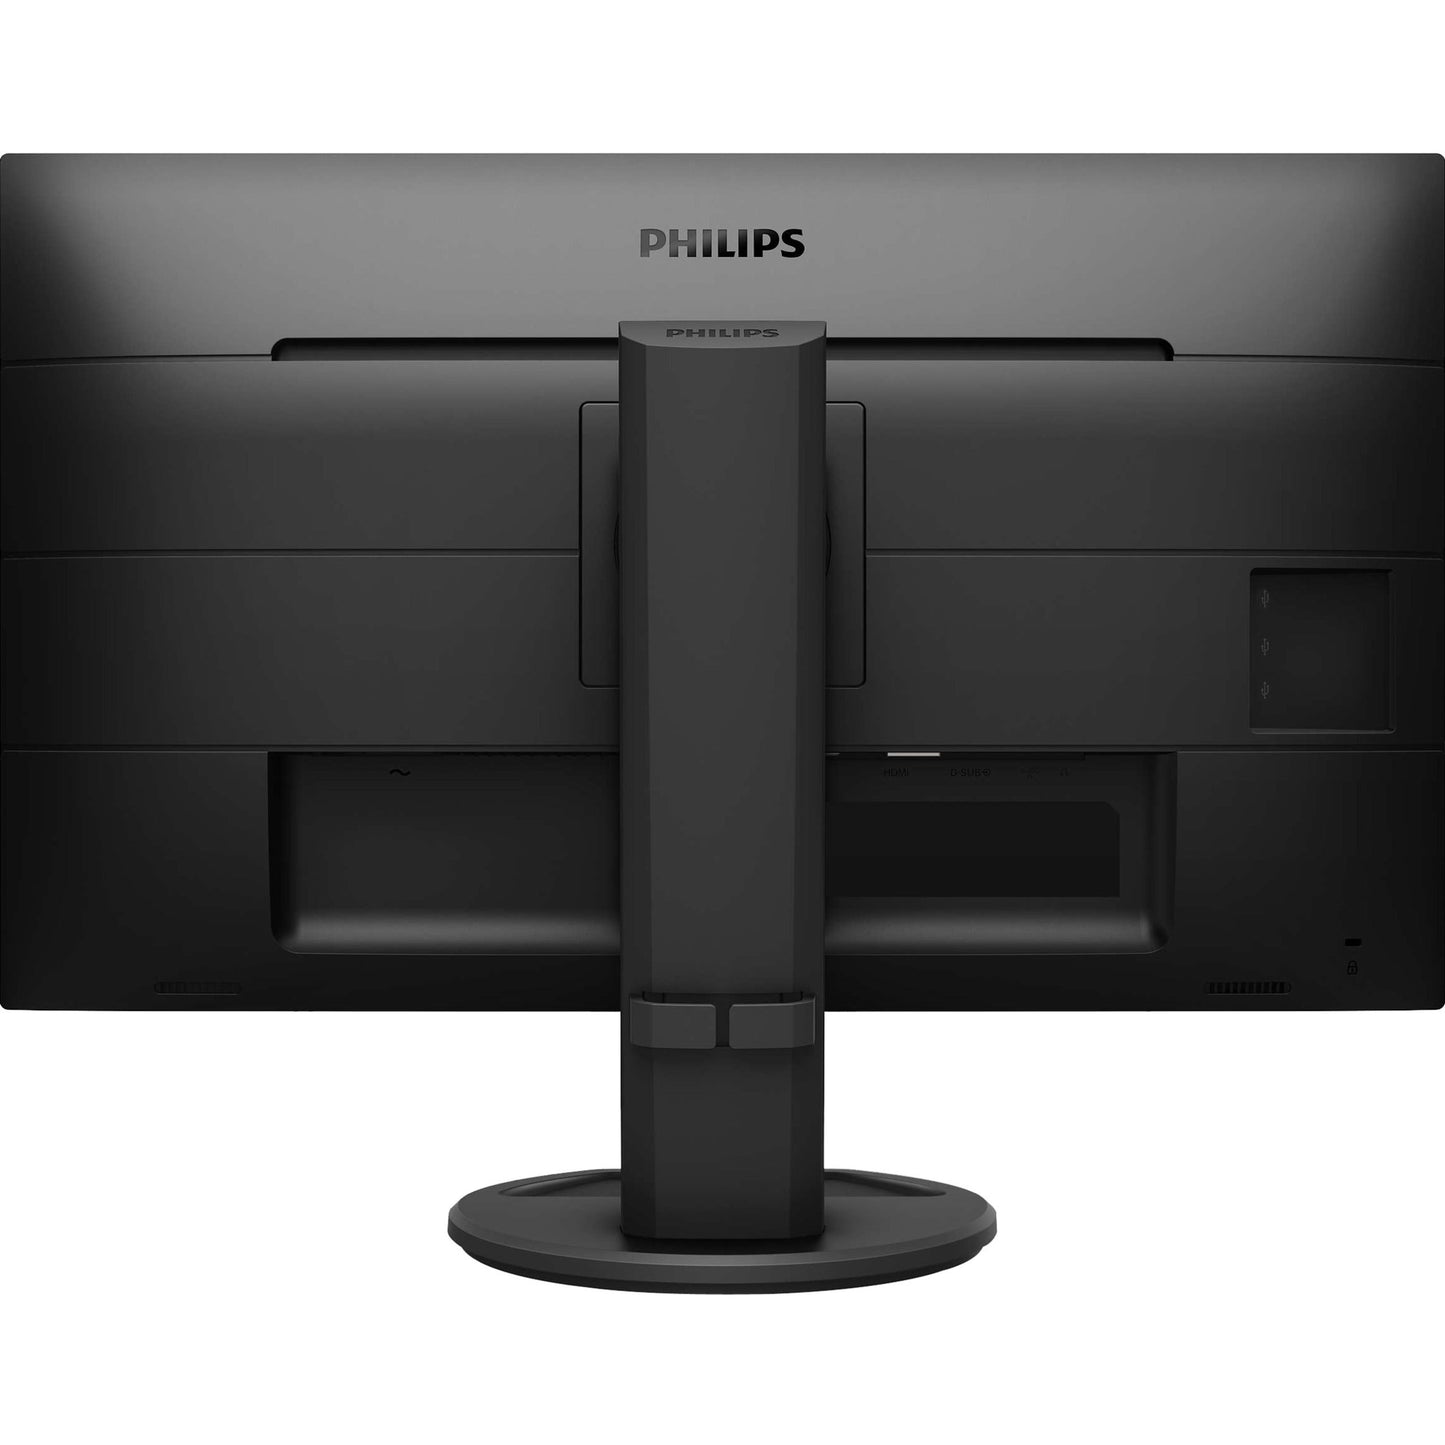 Philips 221B8LJEB 21.5" Full HD LCD Monitor - 16:9 - Textured Black